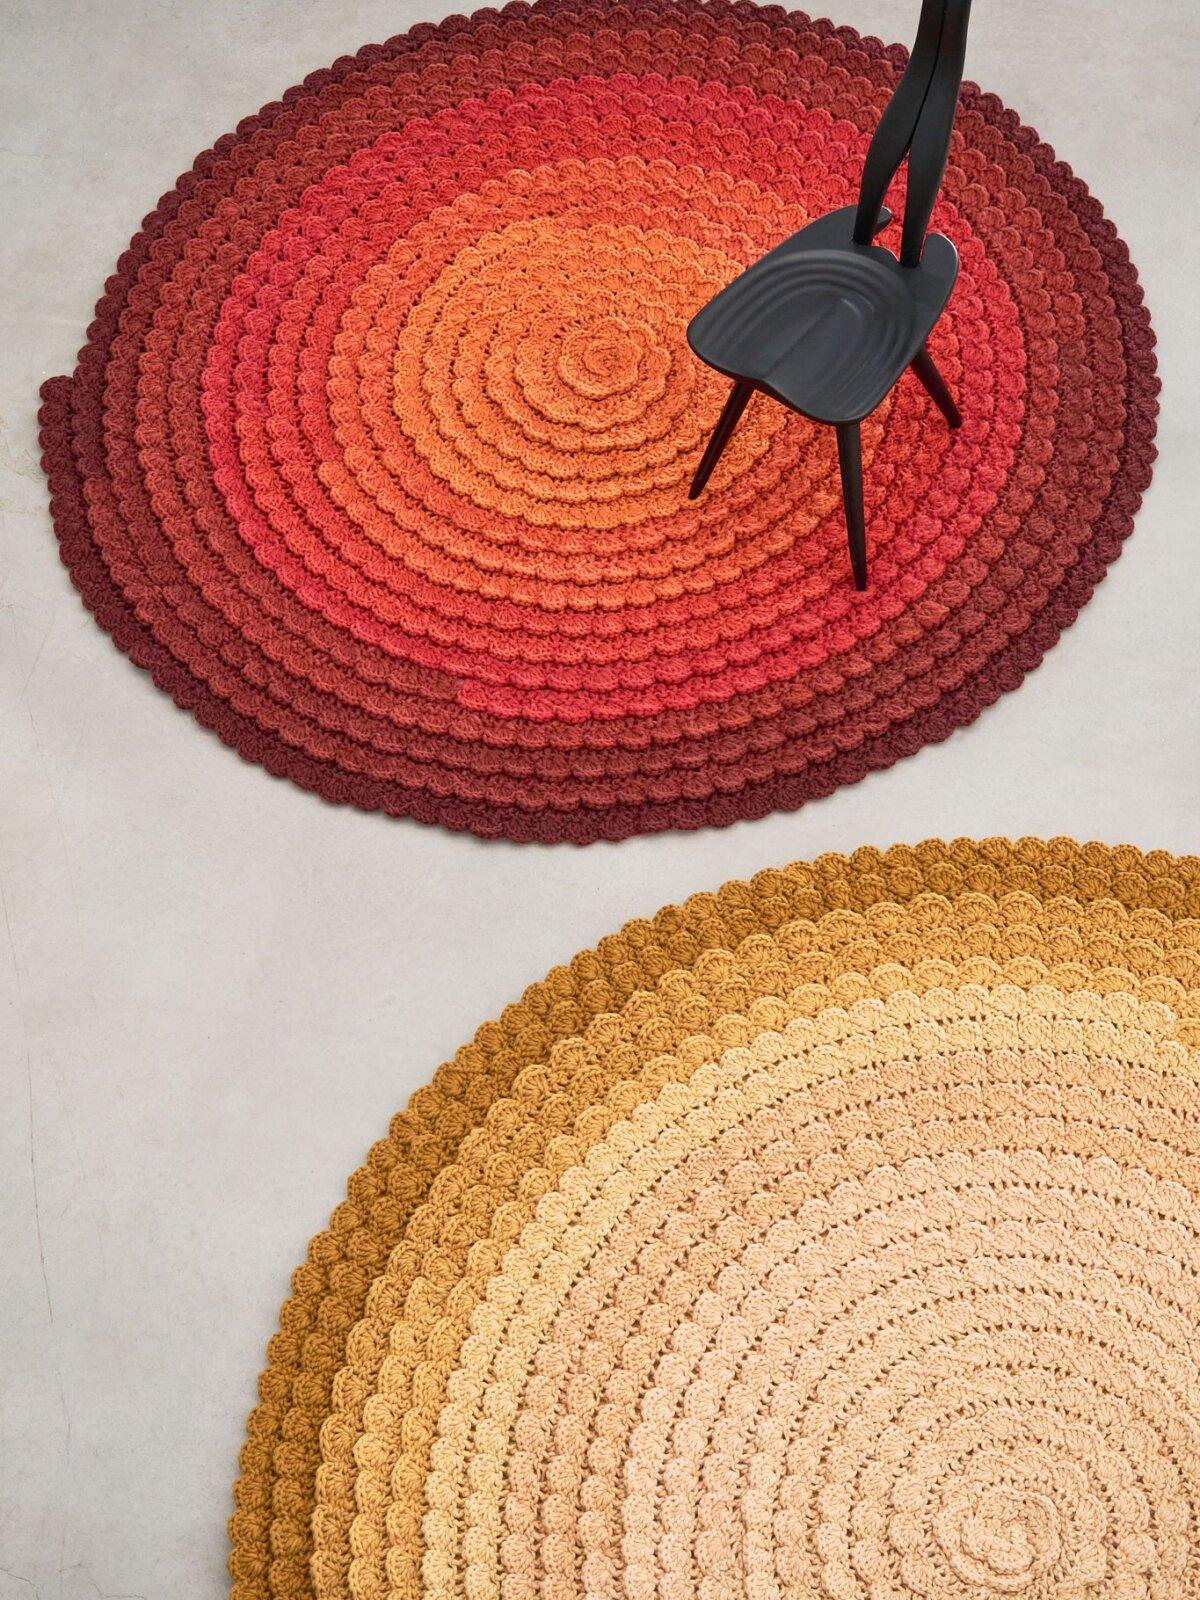 Die Swirl Collection bietet eine Vielzahl von Teppichen, die von den vier Jahreszeiten inspiriert sind, mit so vielsagenden Namen wie Herbst, Frühling, Winter und Sommer. Jeder Teppich ist eine einzigartige Interpretation der Nuancen und Gefühle der